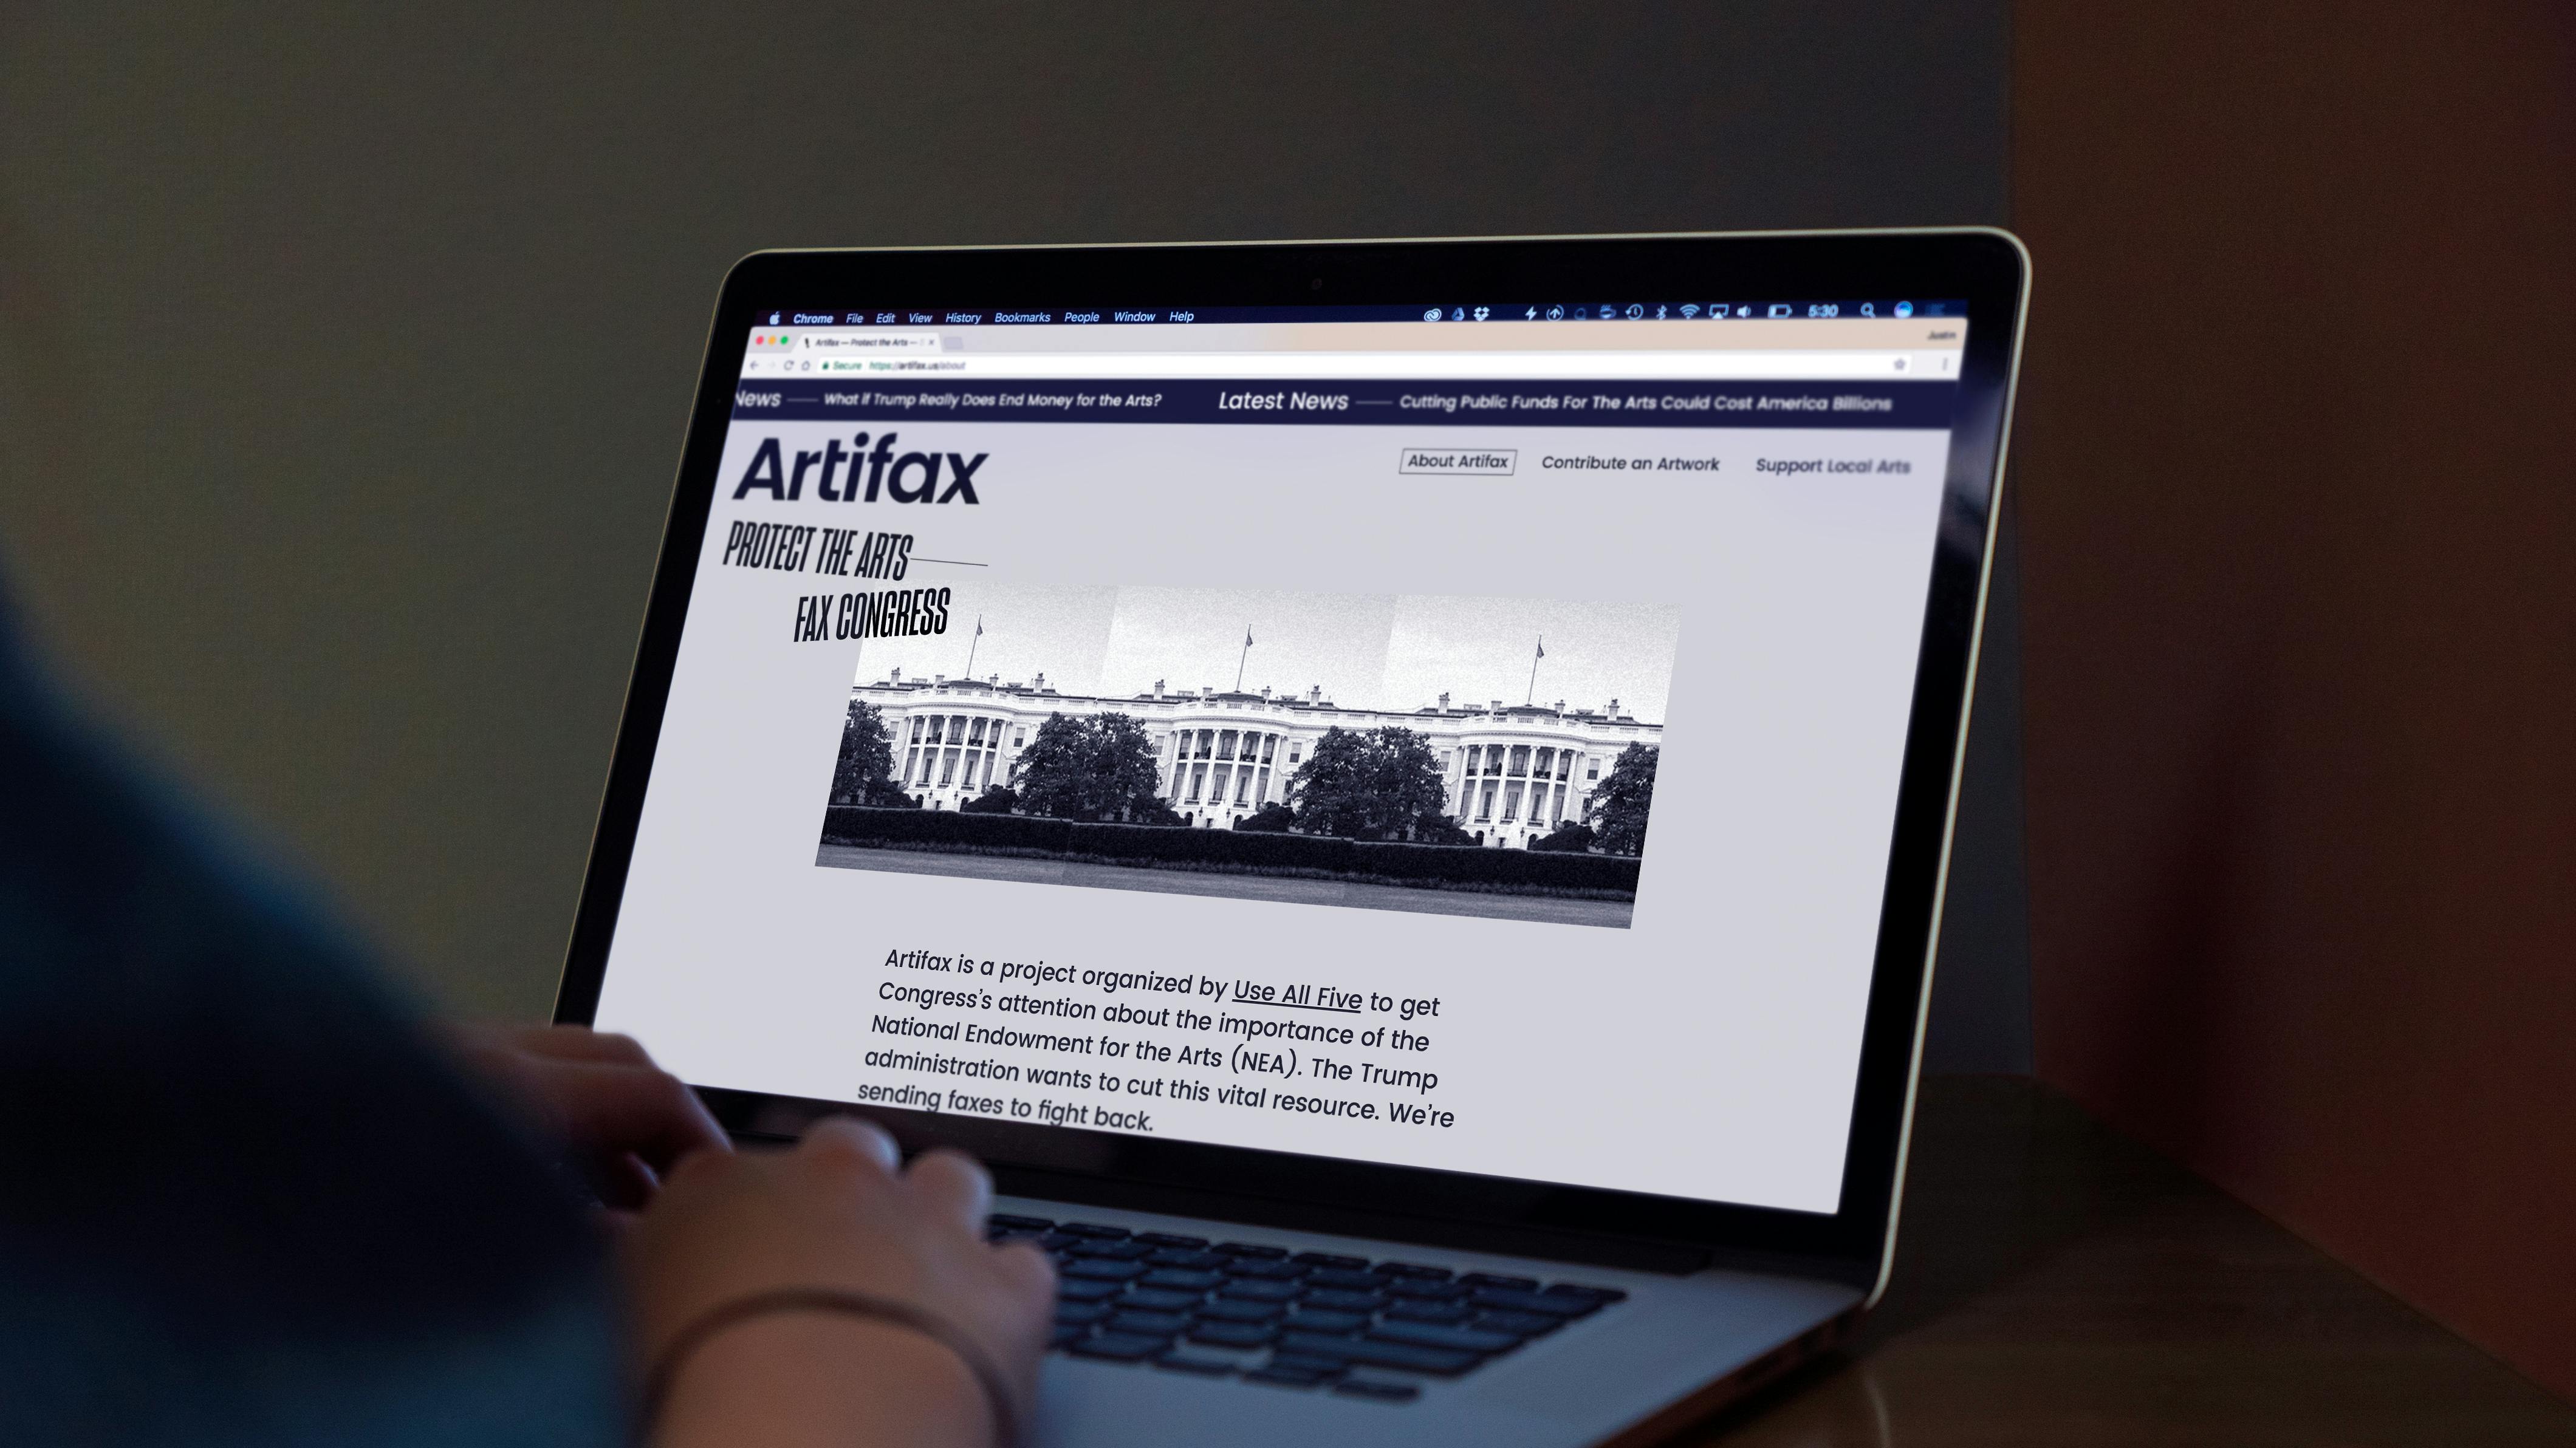 Artifax: Protect the Art - Fax Congress